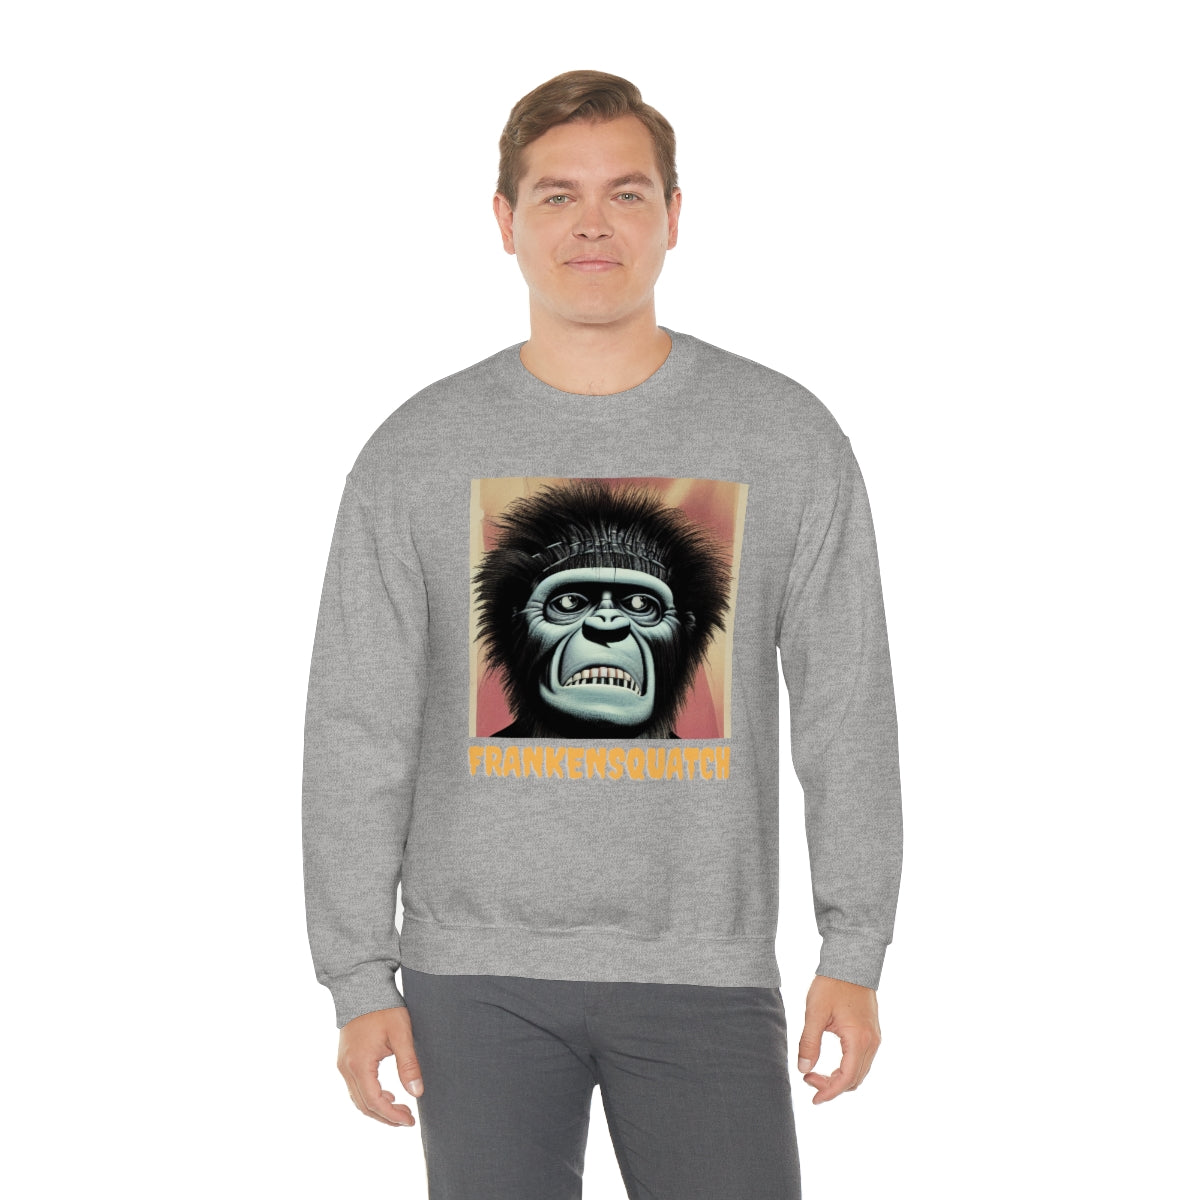 Franken-Squatch Sweatshirt